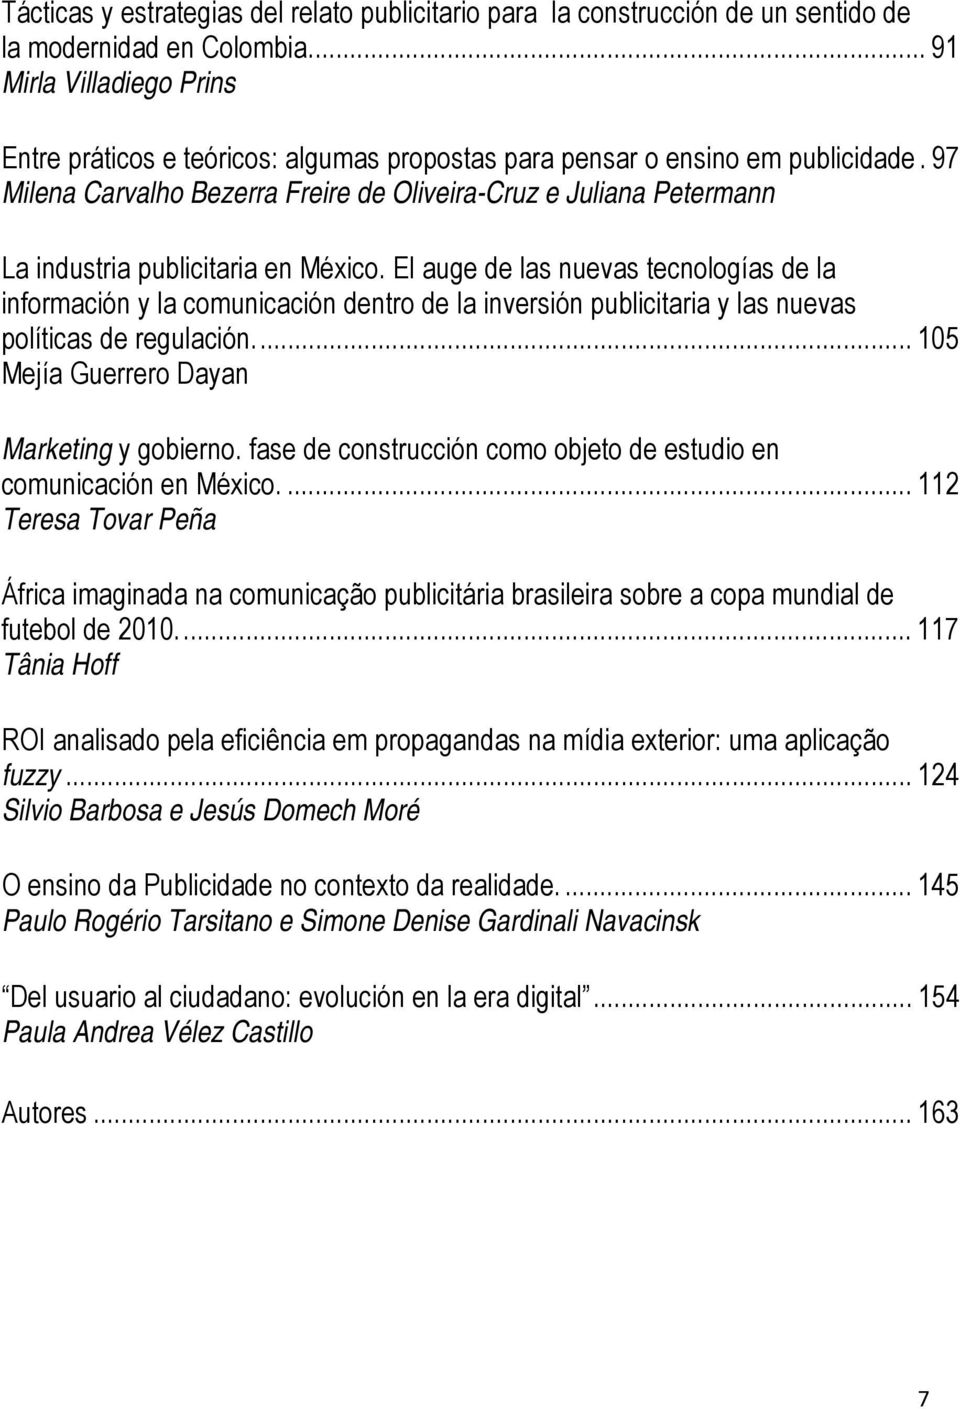 97 Milena Carvalho Bezerra Freire de Oliveira-Cruz e Juliana Petermann La industria publicitaria en México.